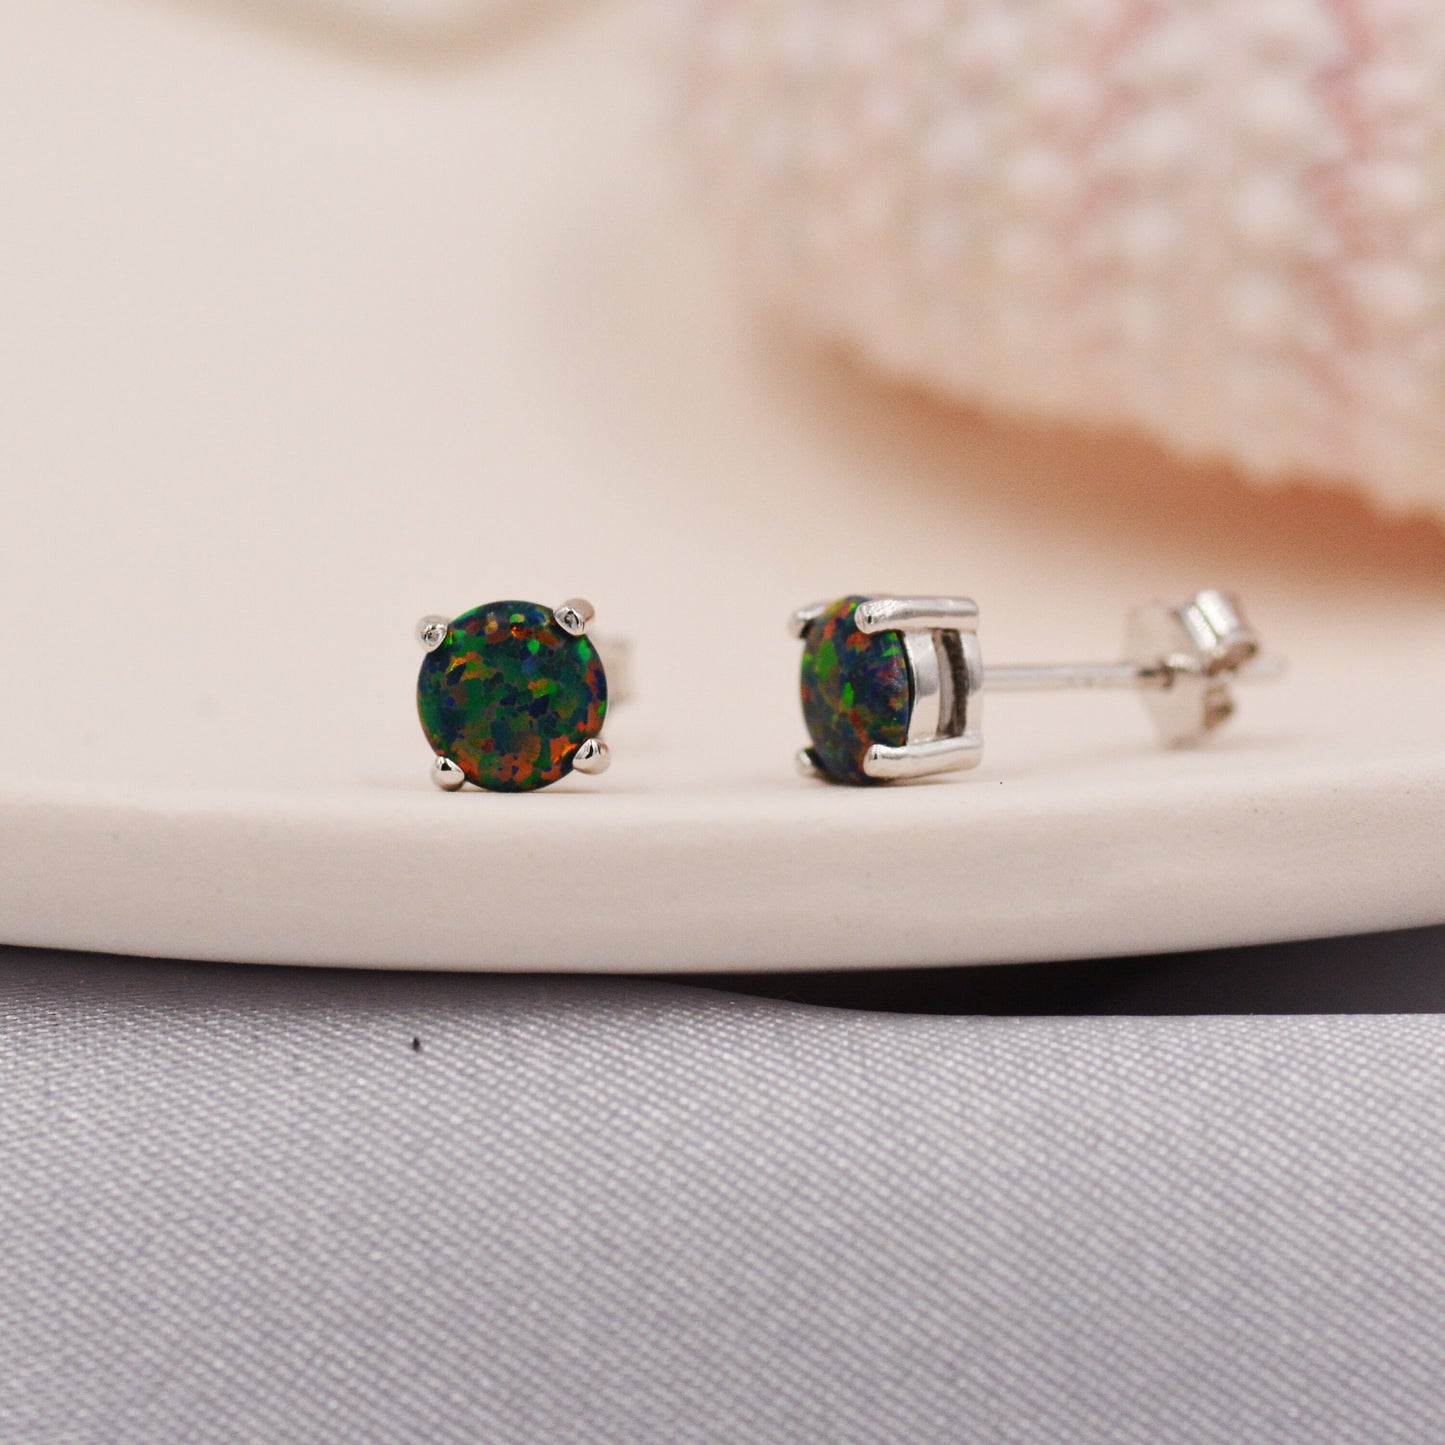 Black Opal Stud Earrings in Sterling Silver - 3 sizes - Lab Opal Stud Earrings  - Semi Precious Gemstone